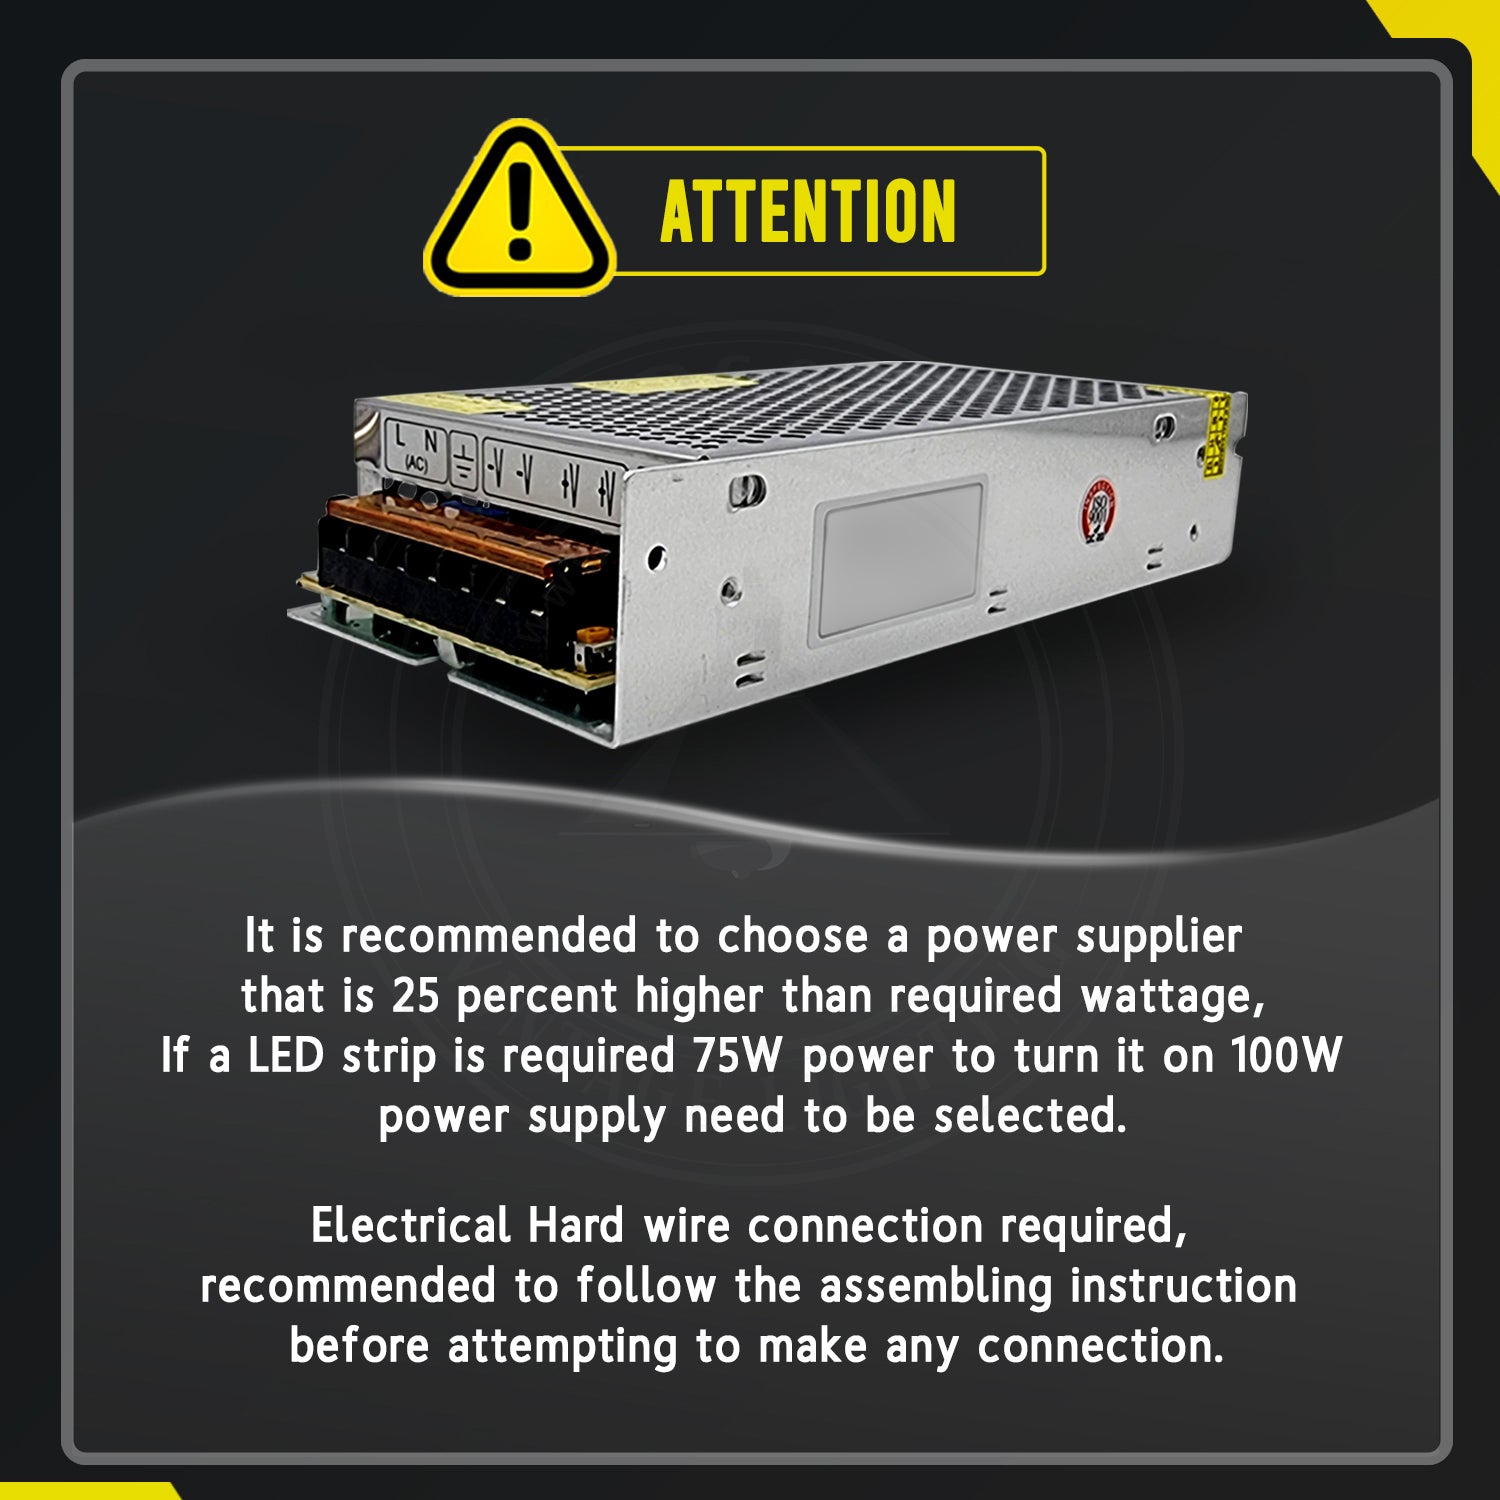 LED Driver DC 5V 150w IP20 30 Amp Constant Voltage Transformer- Attention Details